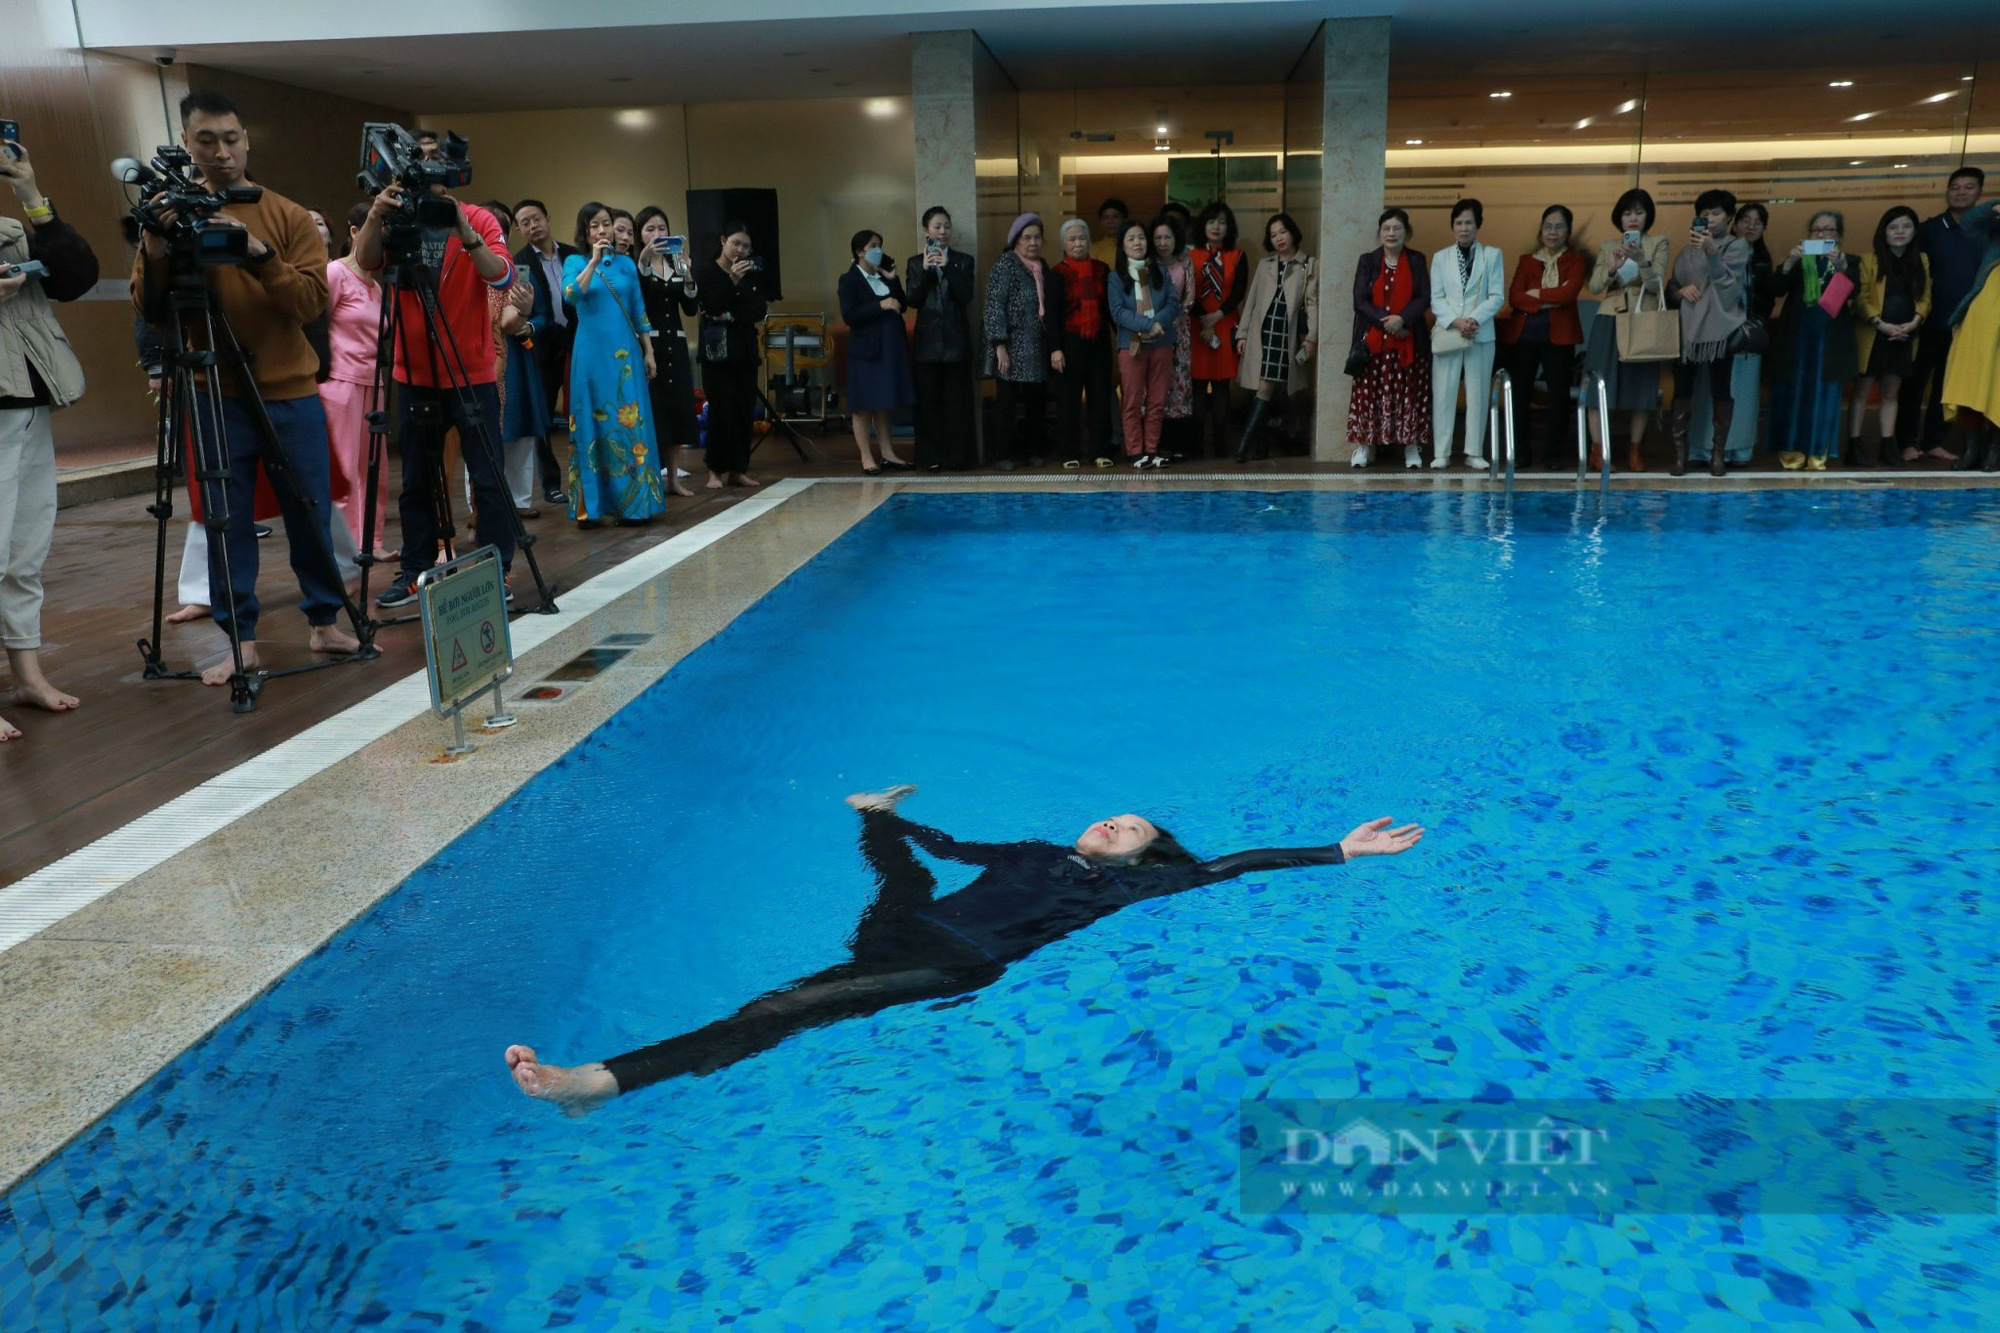 Bí quyết rèn luyện sức khoẻ của cụ bà U80 lập kỷ lục biểu diễn yoga xoay 80 vòng dưới nước - Ảnh 1.